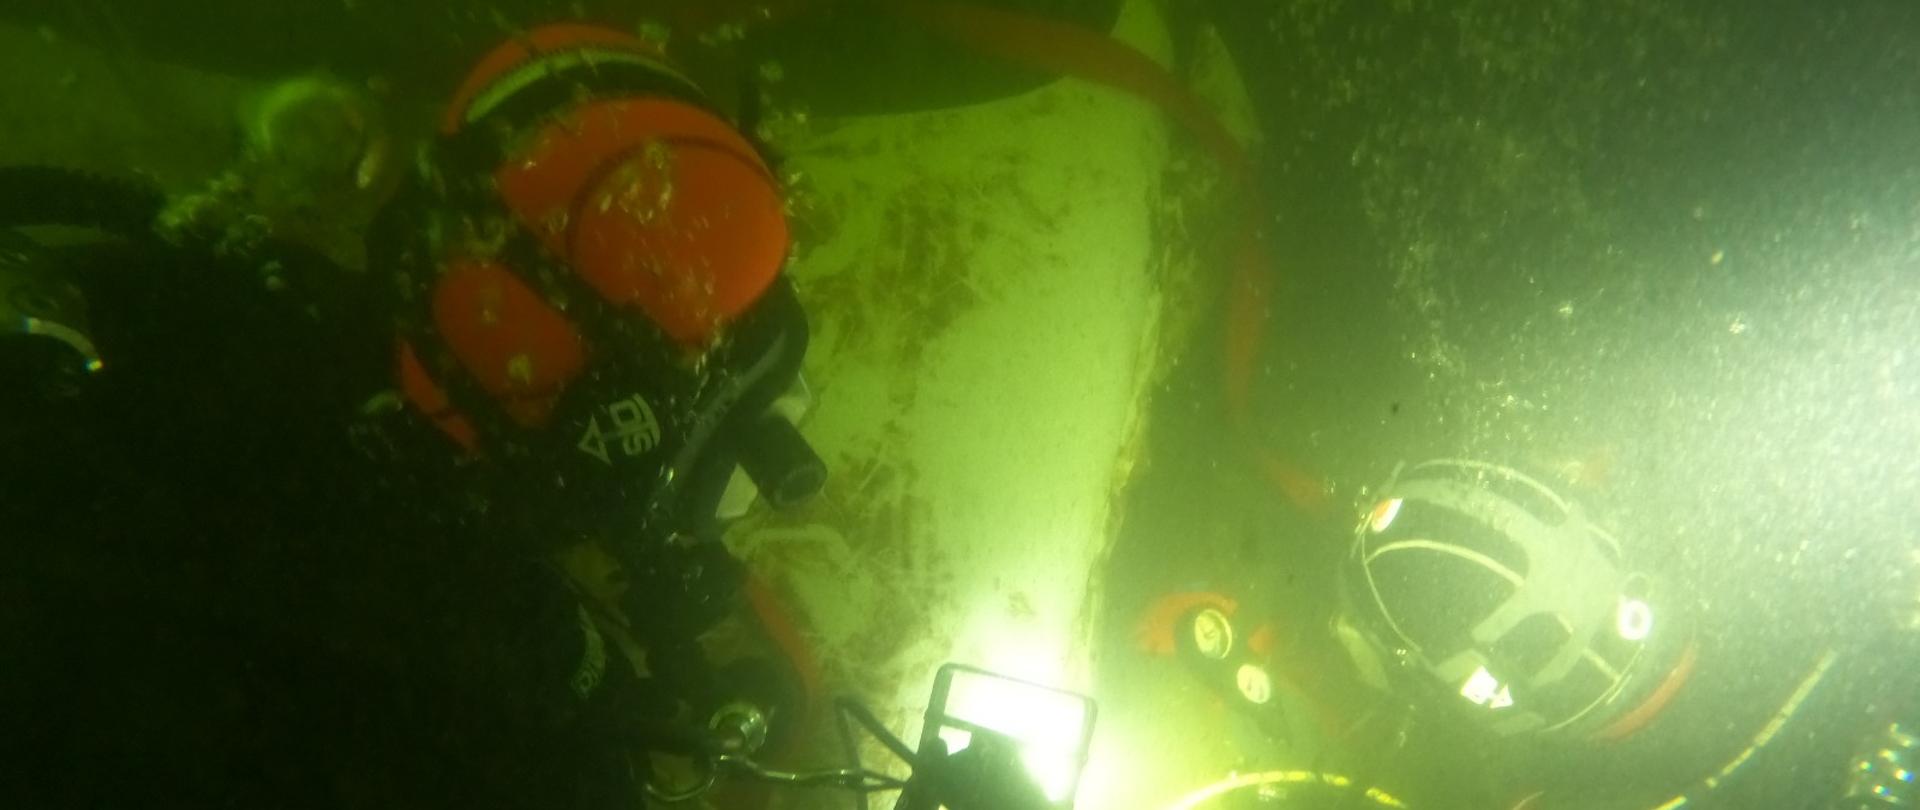 Zdjęcie wykonane pod wodą. Na zdjęciu widać wrak samochodu osobowego. Wrak w kolorze białym. Na wraku dwóch nurków wiąże czerwony pas, który posłuży do wydobycia pojazdu na powierzchnię wody.